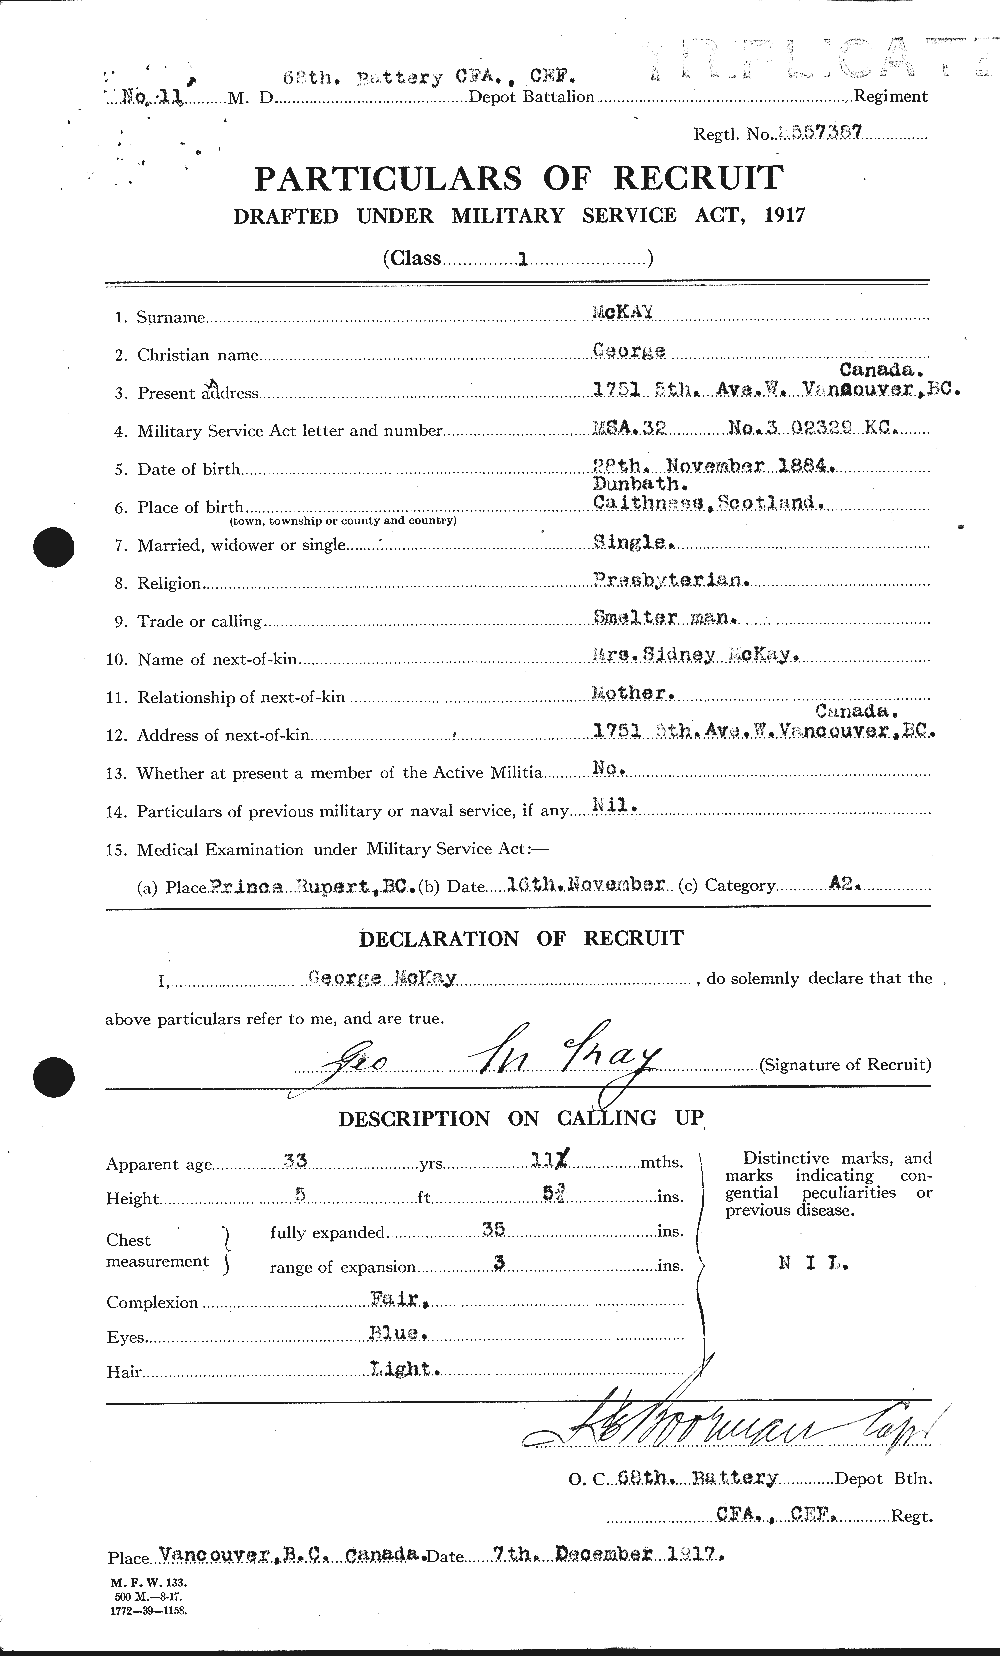 Dossiers du Personnel de la Première Guerre mondiale - CEC 534640a